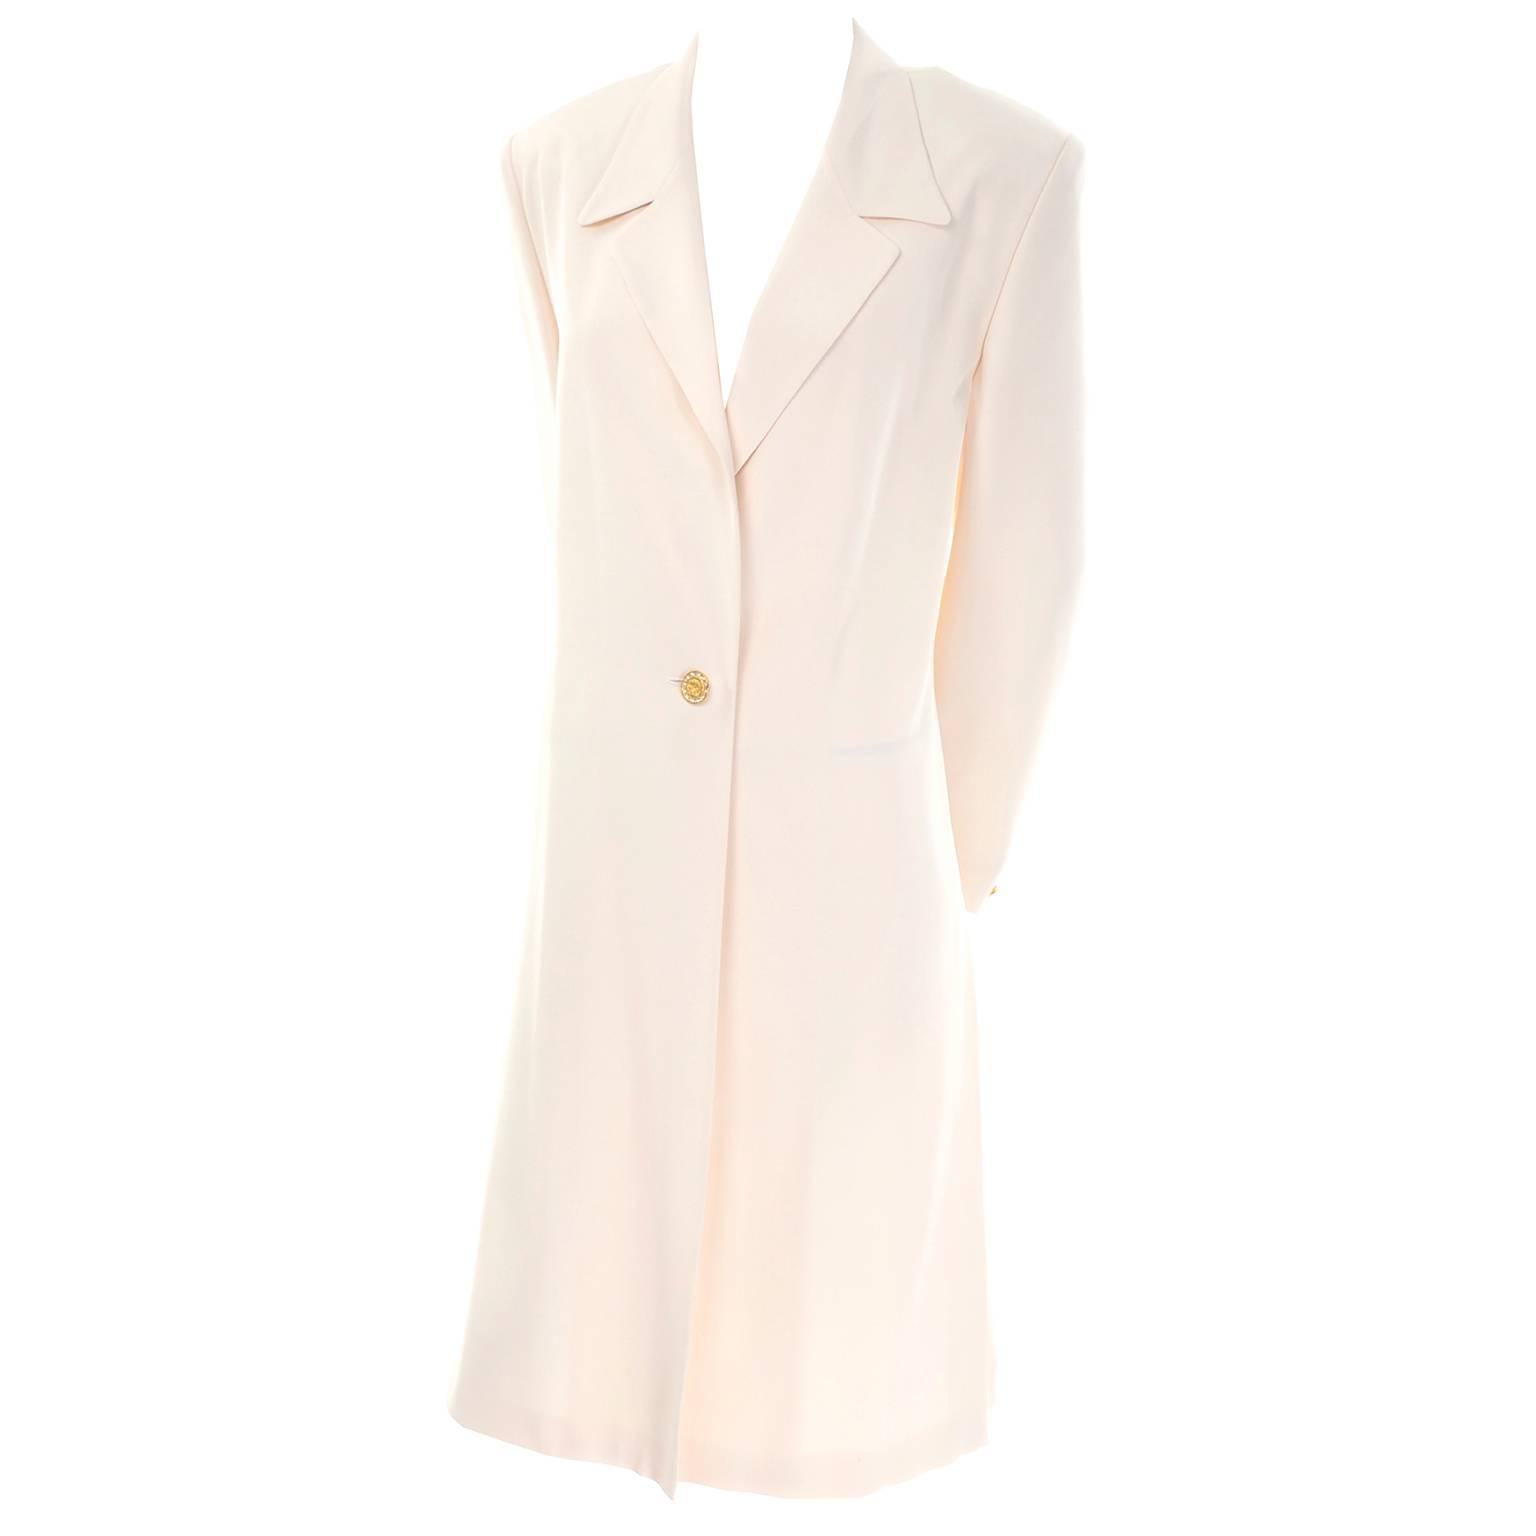 Manteau de soirée vintage Escada Couture couleur ivoire crème avec boutons or en strass 38 en vente